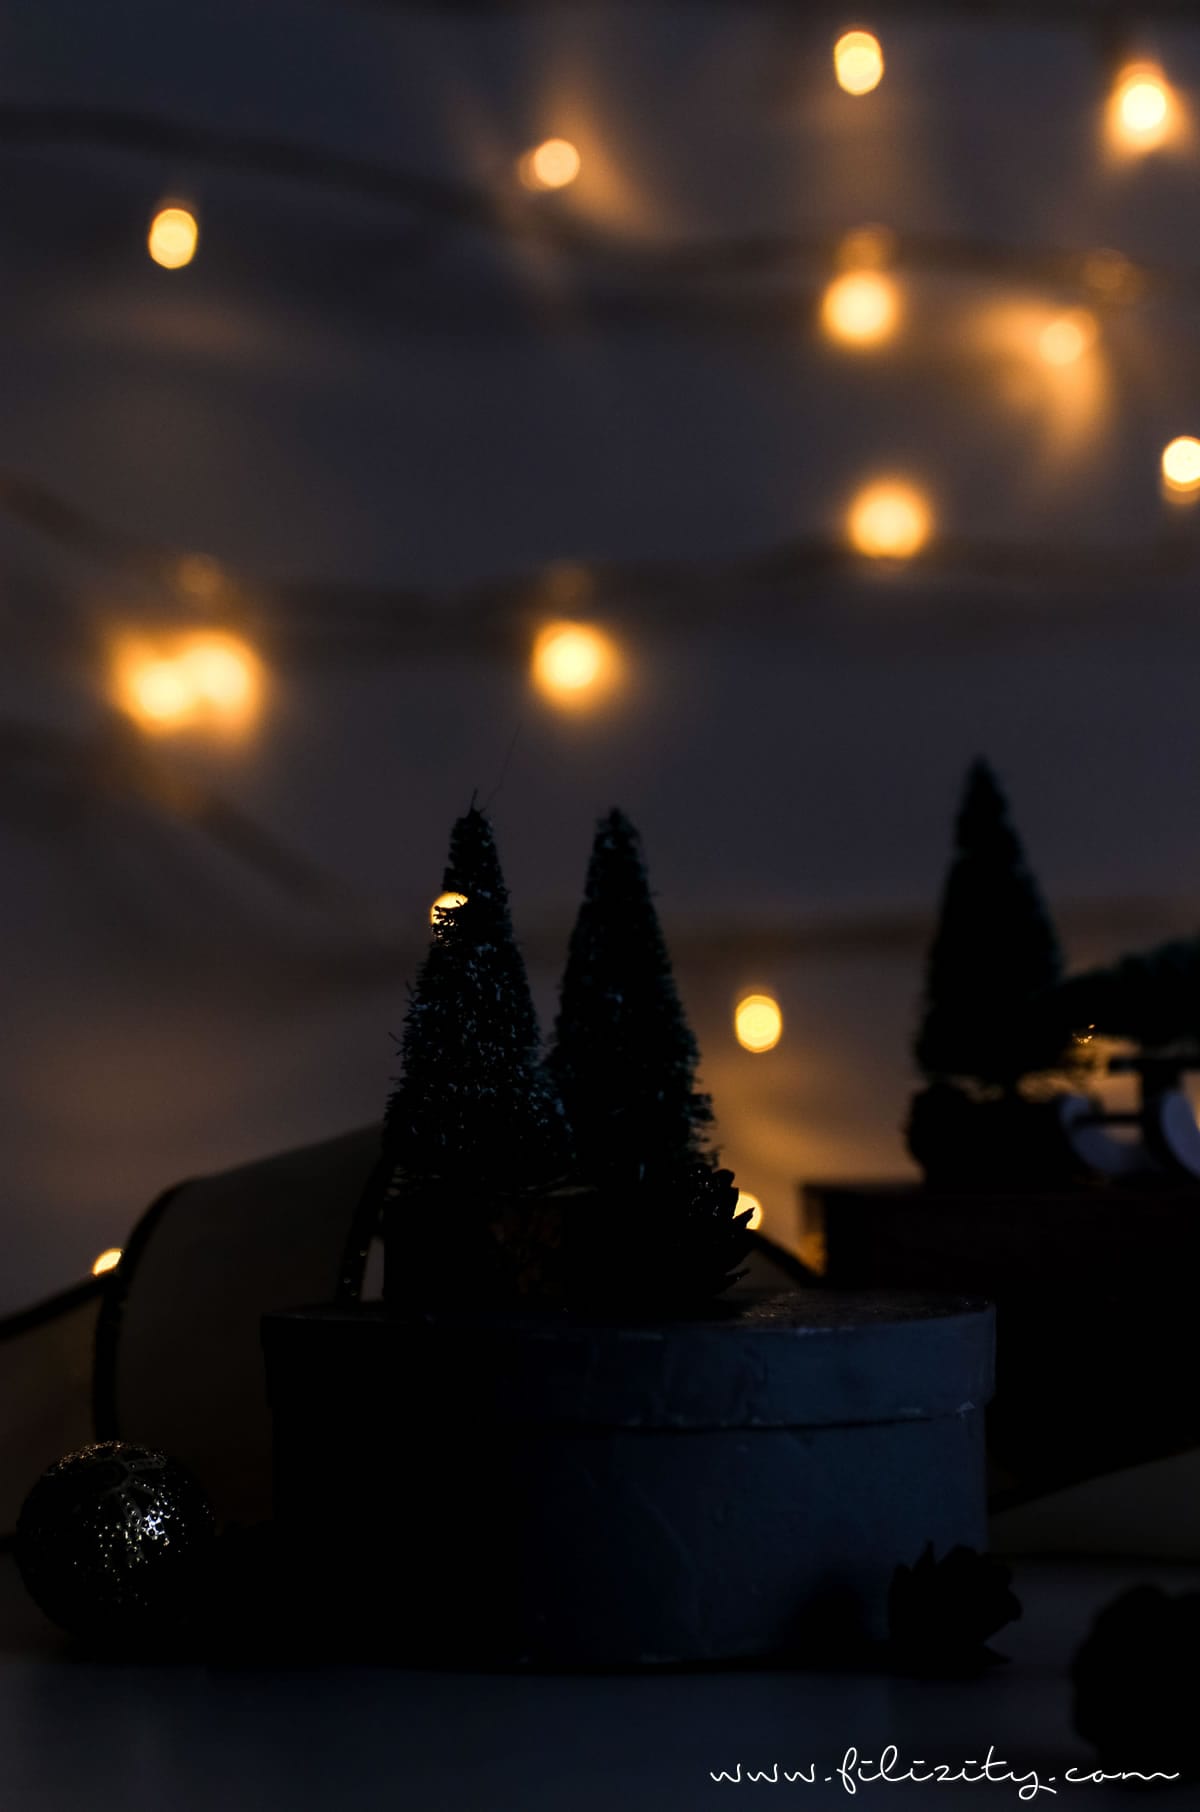 Weihnachtsgeschenke verpacken: DIY Geschenkboxen "Winterwald" aus alten Holzschachteln | Geschenkverpackung und Deko-Idee mit Tannenbaum, Schlitten & Co. | Filizity.com | DIY-Blog aus dem Rheinland #weihnachten #geschenkidee #weihnachtsgeschenke #ohtannenbaum